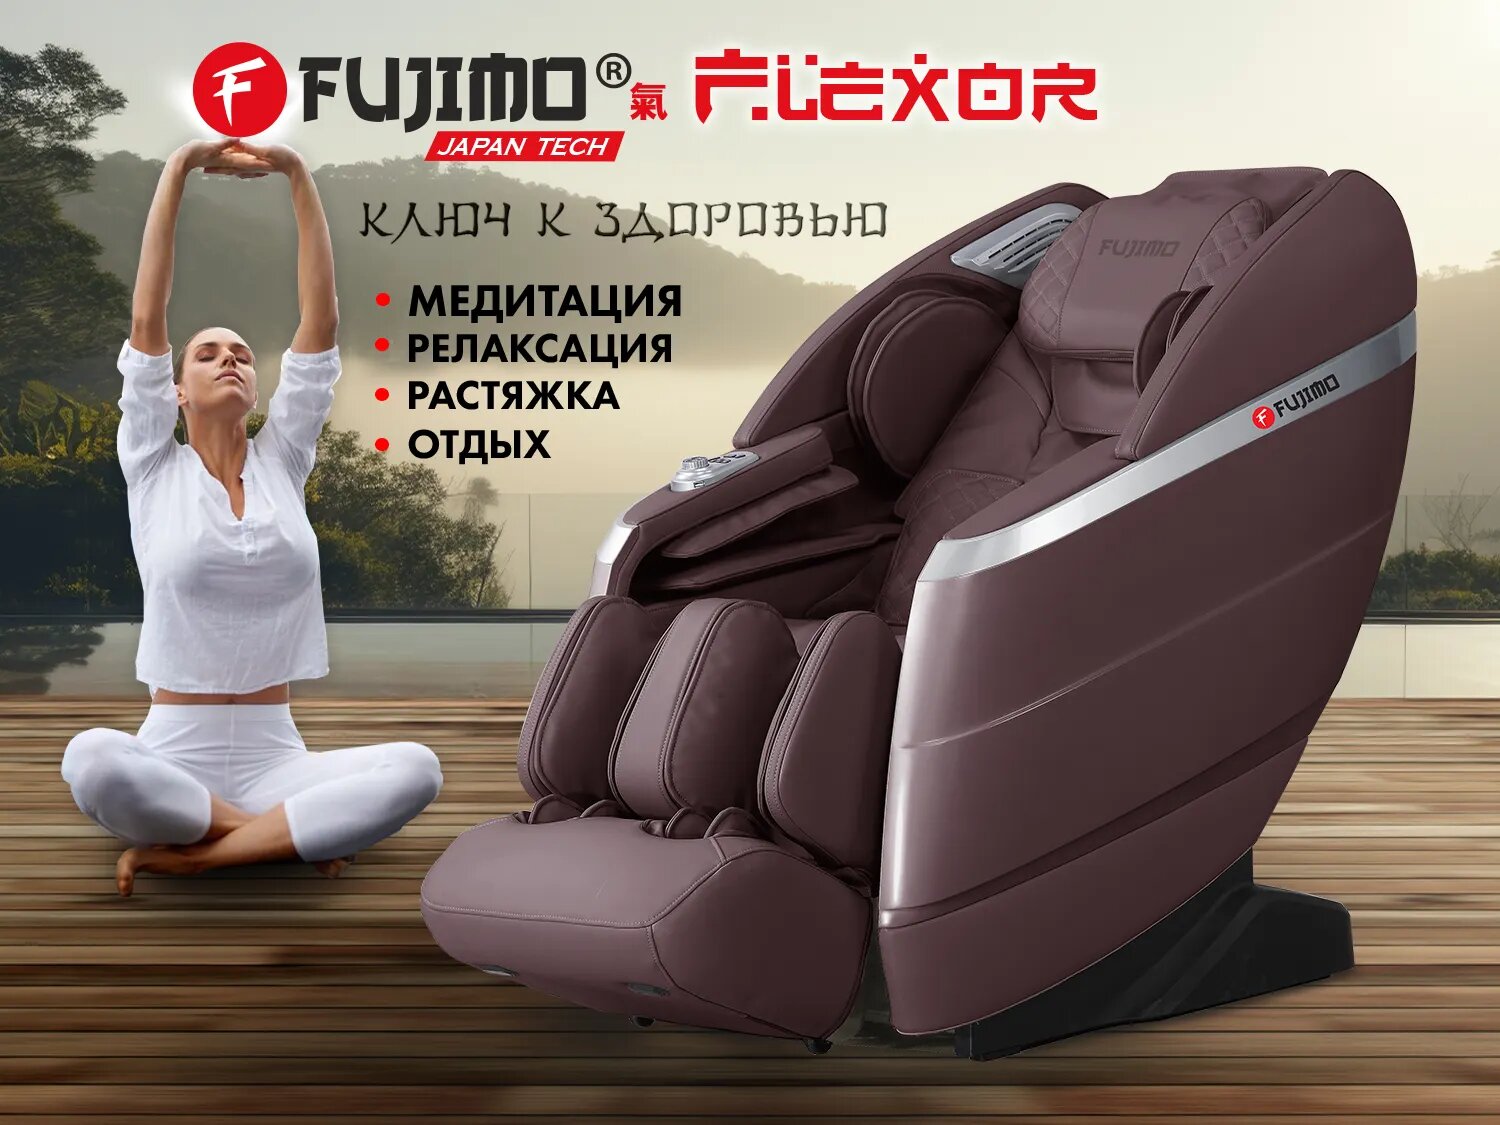 Массажное кресло FUJIMO 氣 FLEXOR F500 Brown